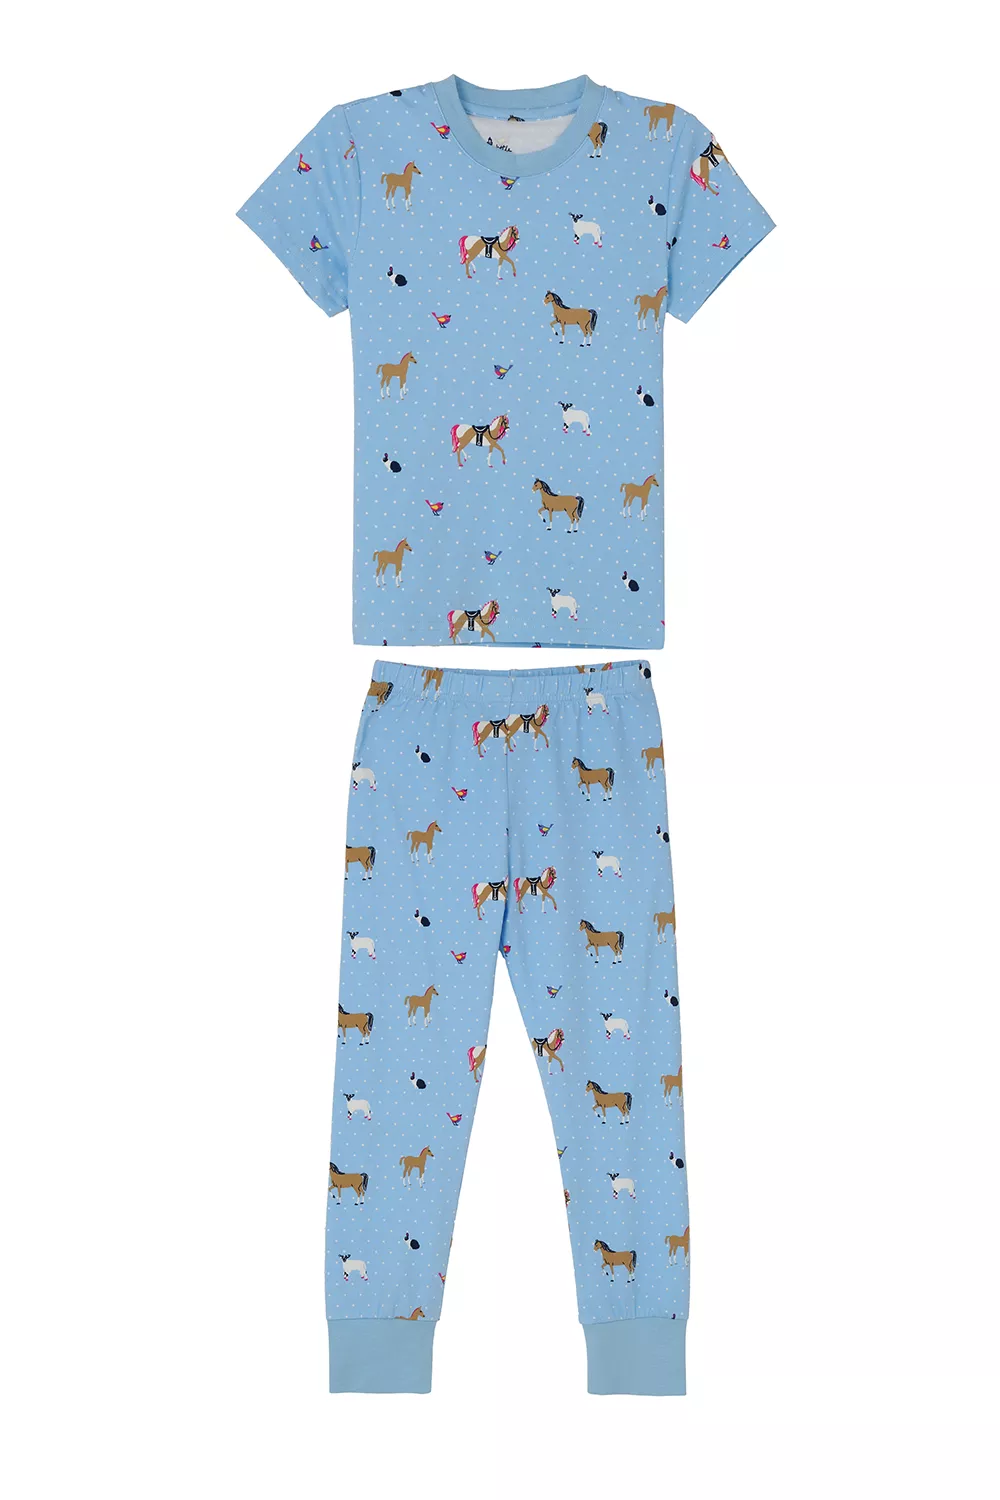 Girls Pyjamas Blue Animal Print 2-3yrs